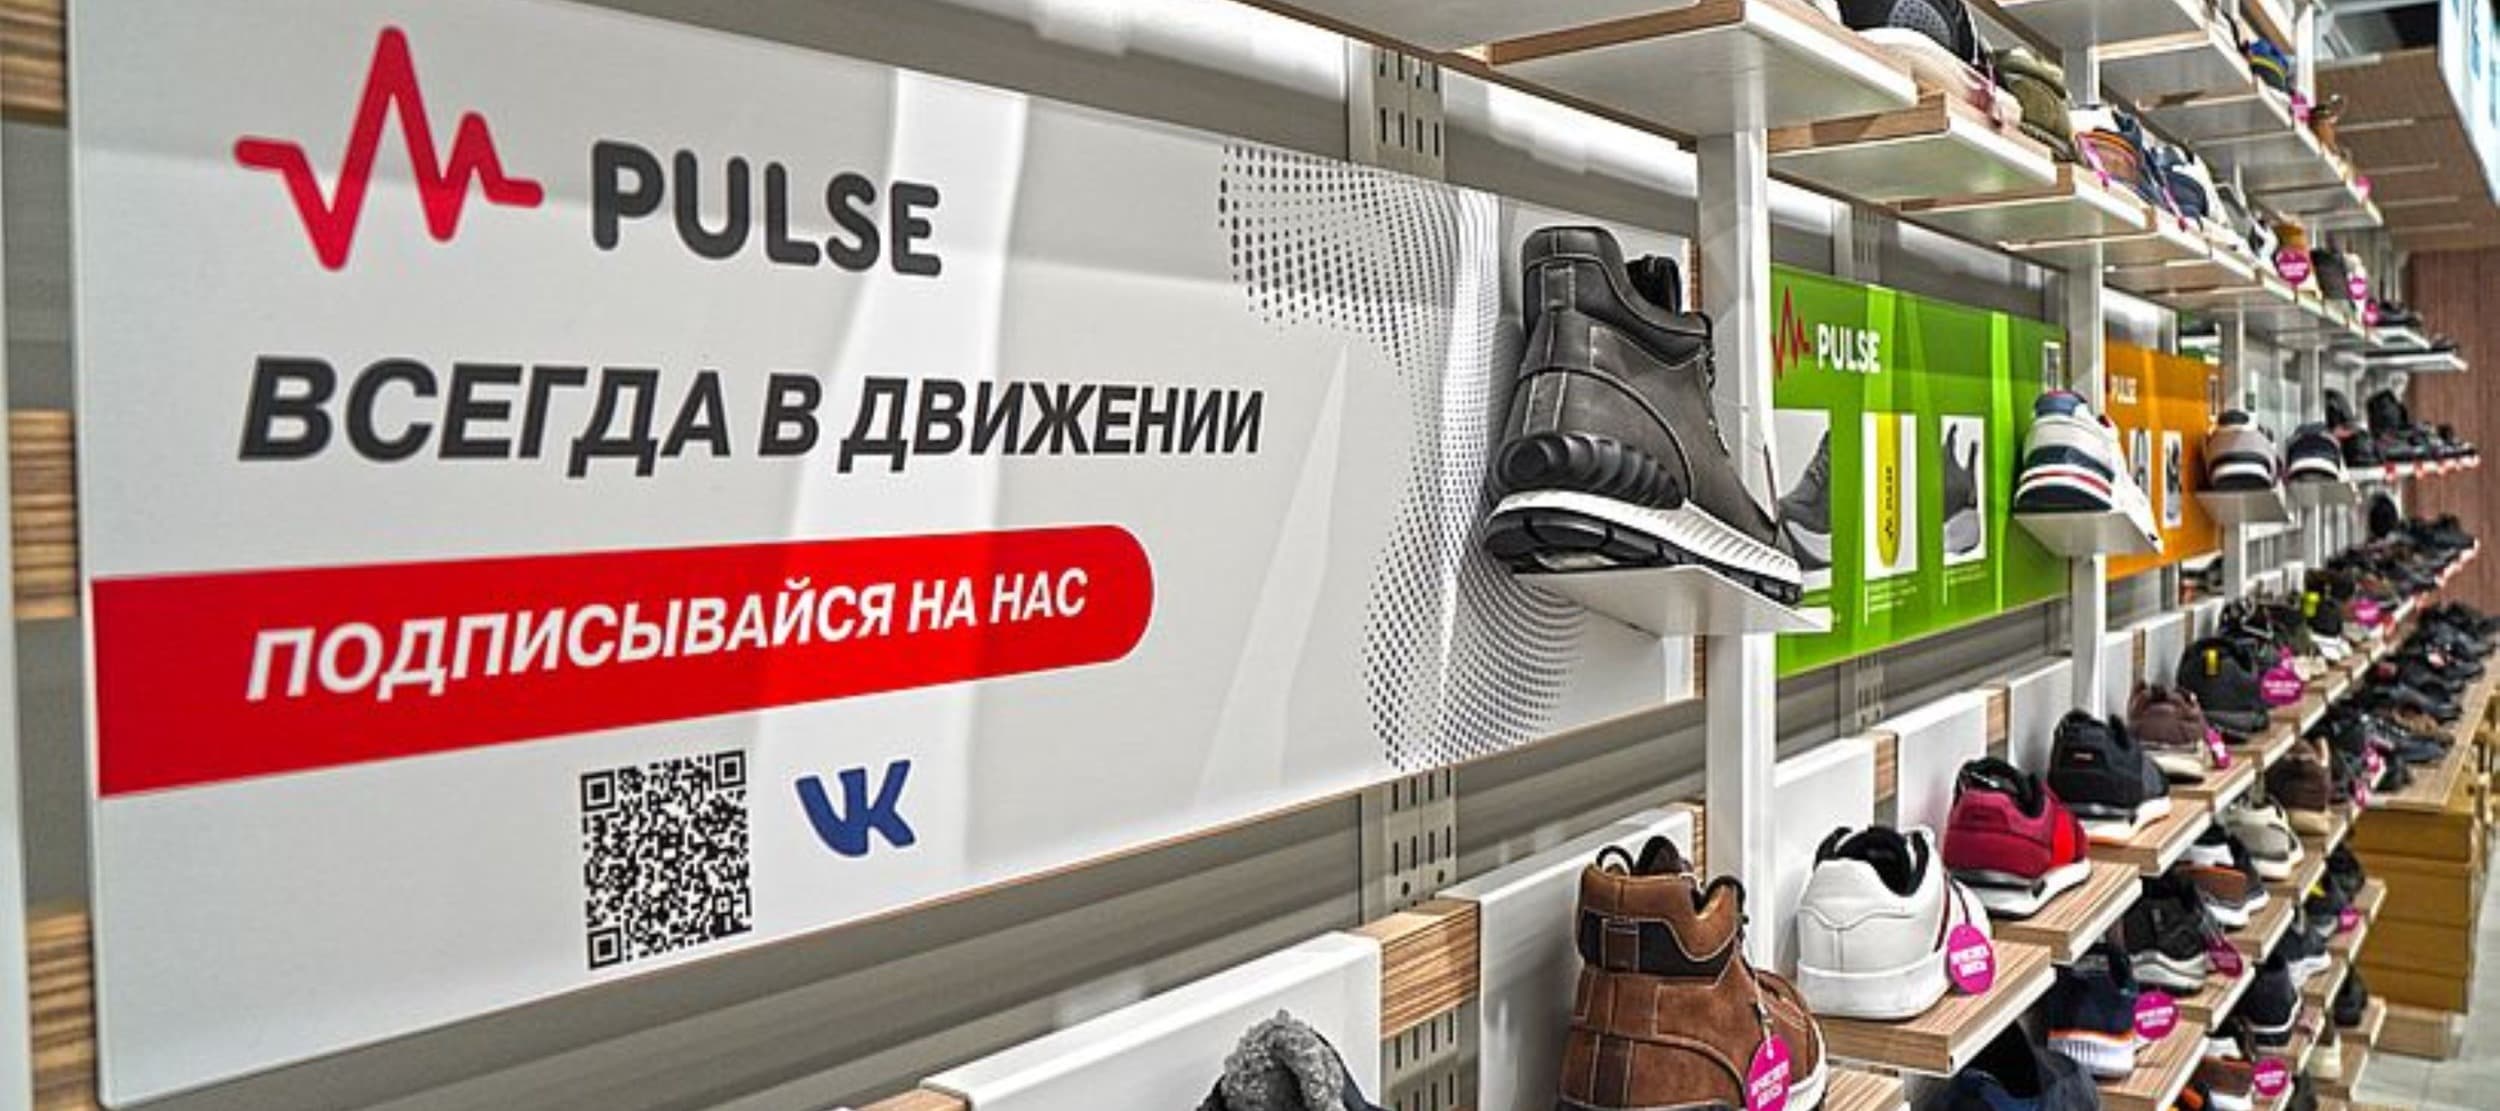 Фото новости: "Обувная компания Zenden в марте начнет продавать одежду под своим брендом Pulse"